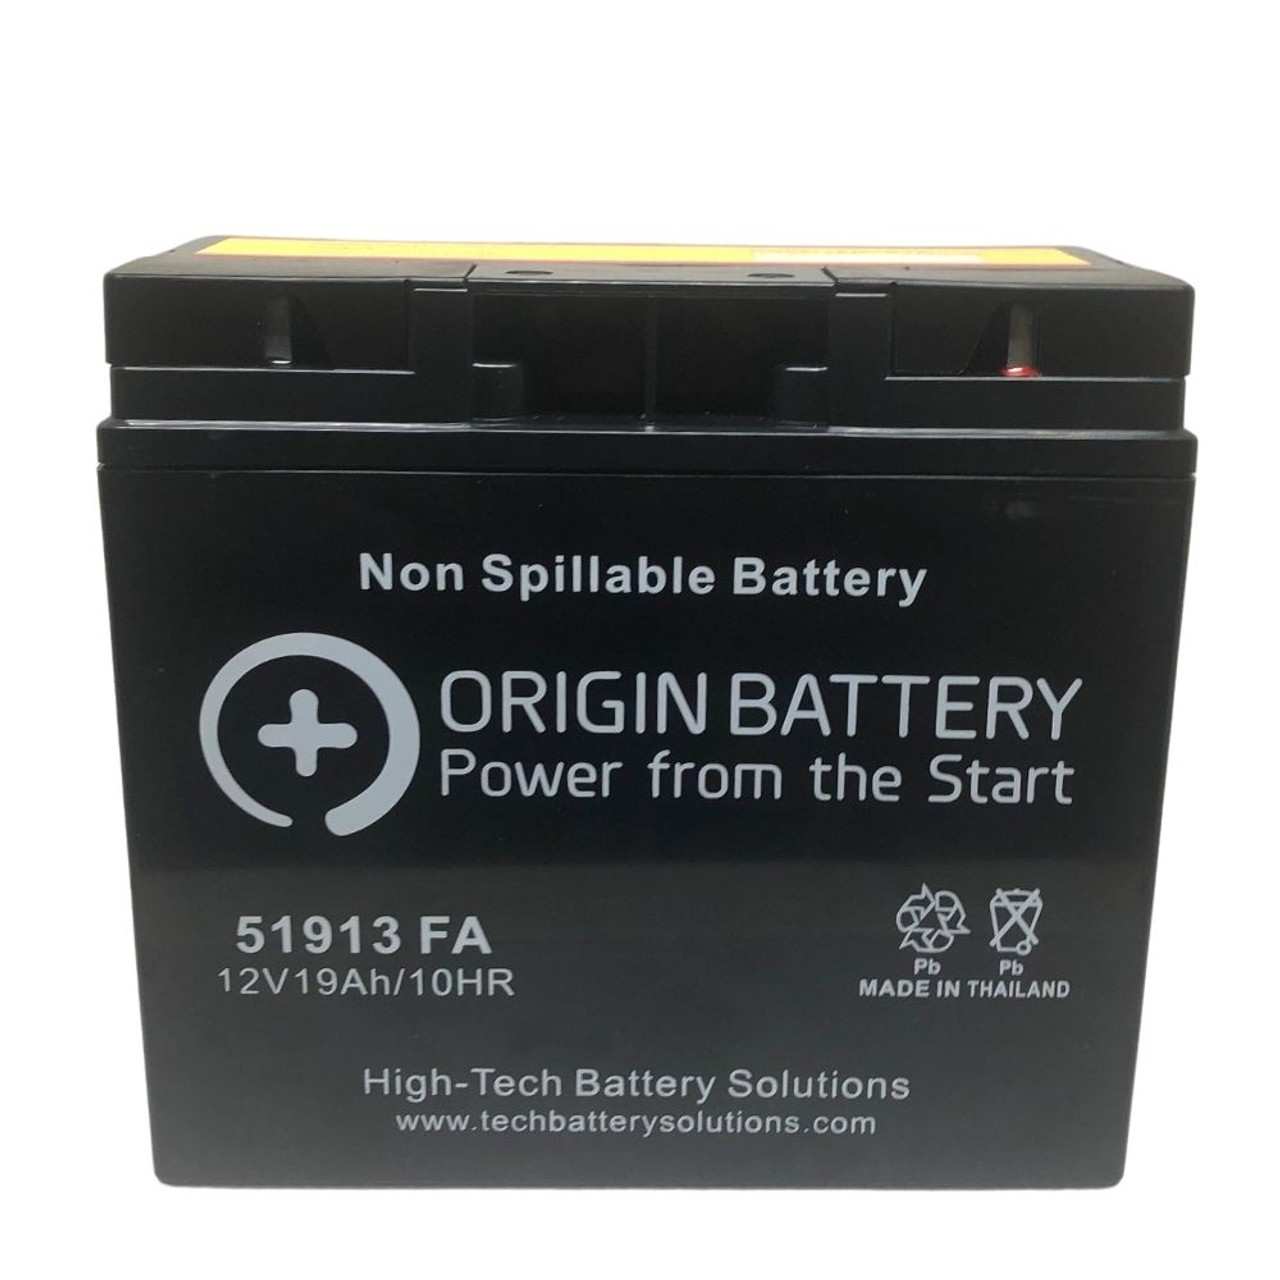 1. Prepare the new battery